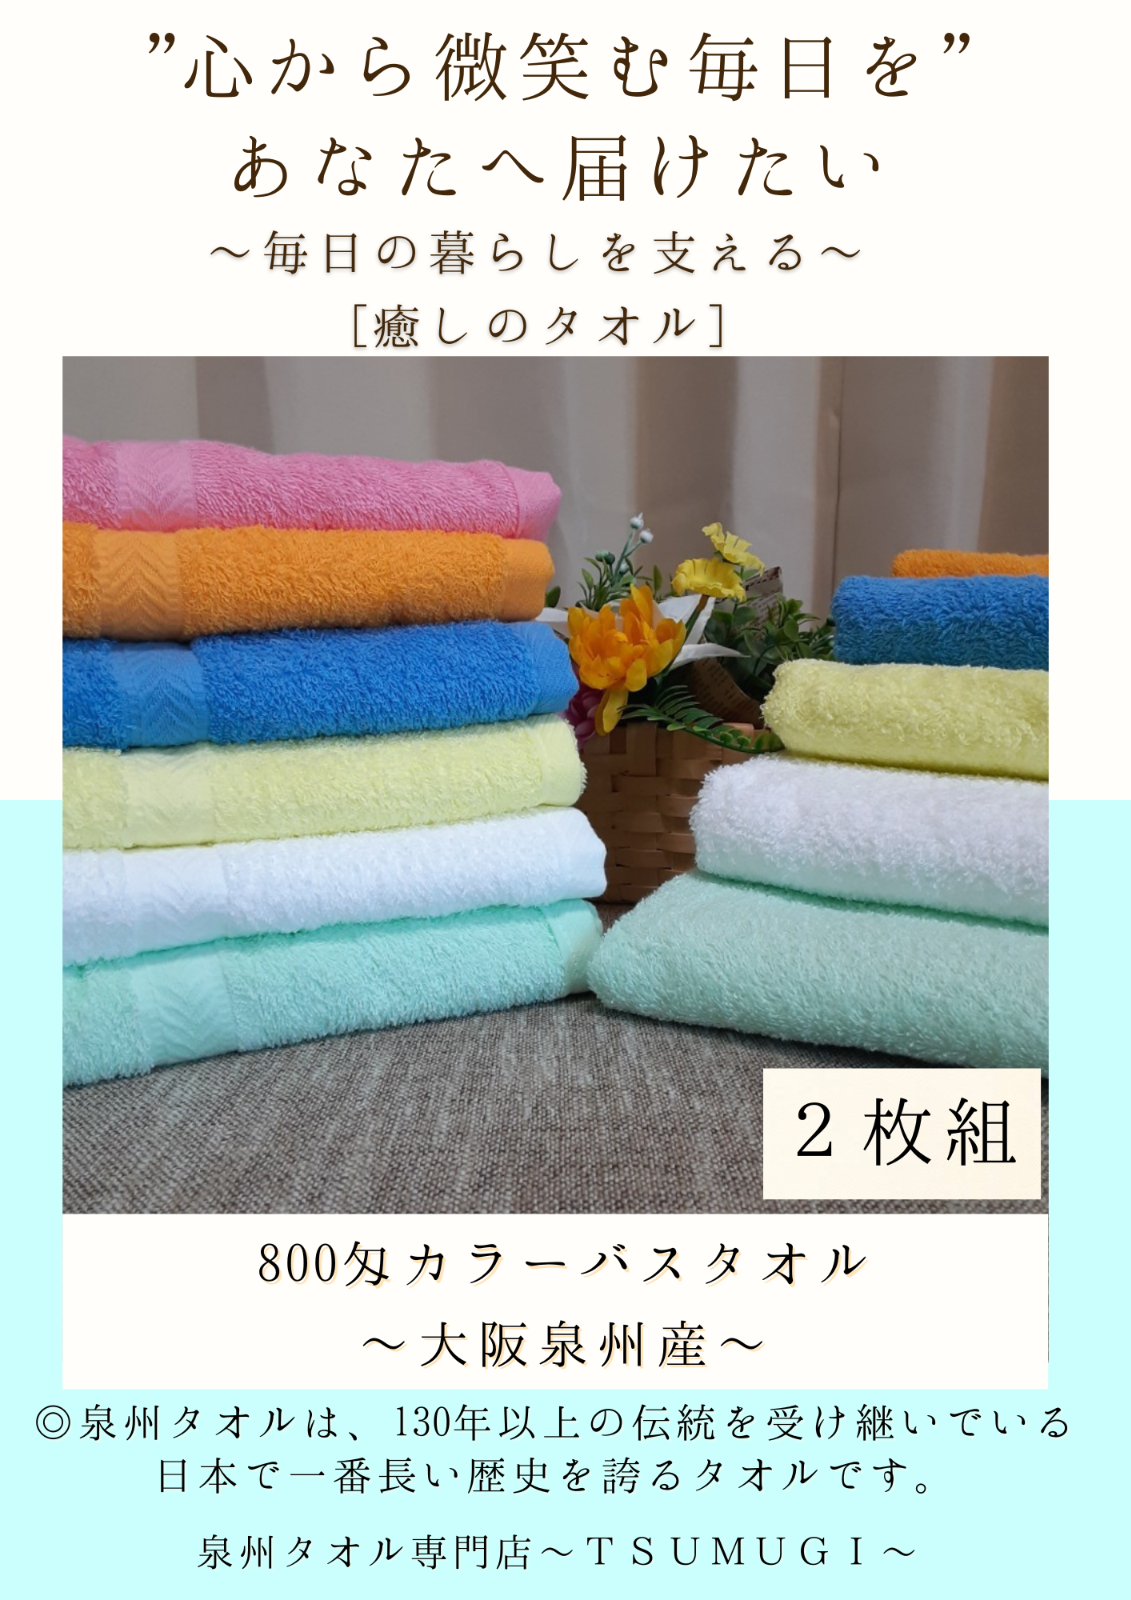 泉州タオル 800匁ピンクバスタオルセット50枚組 タオル新品 まとめ売り